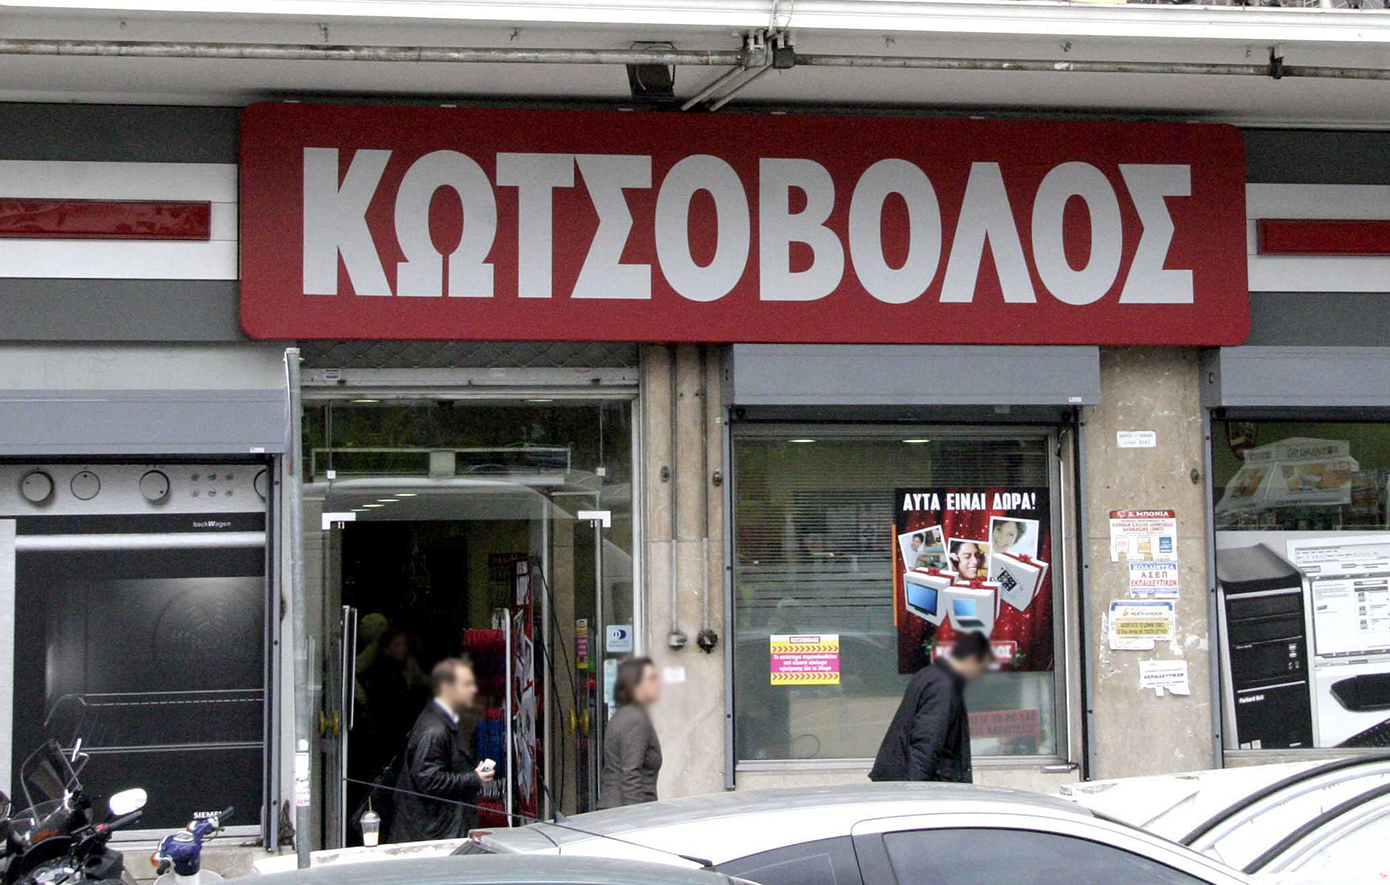 Η στρατηγική κίνηση της ΔΕΗ με την εξαγορά της Κωτσόβολος – Σε ελληνικά χέρια ξανά μετά από 19 χρόνια η αλυσίδα ηλεκτρικών